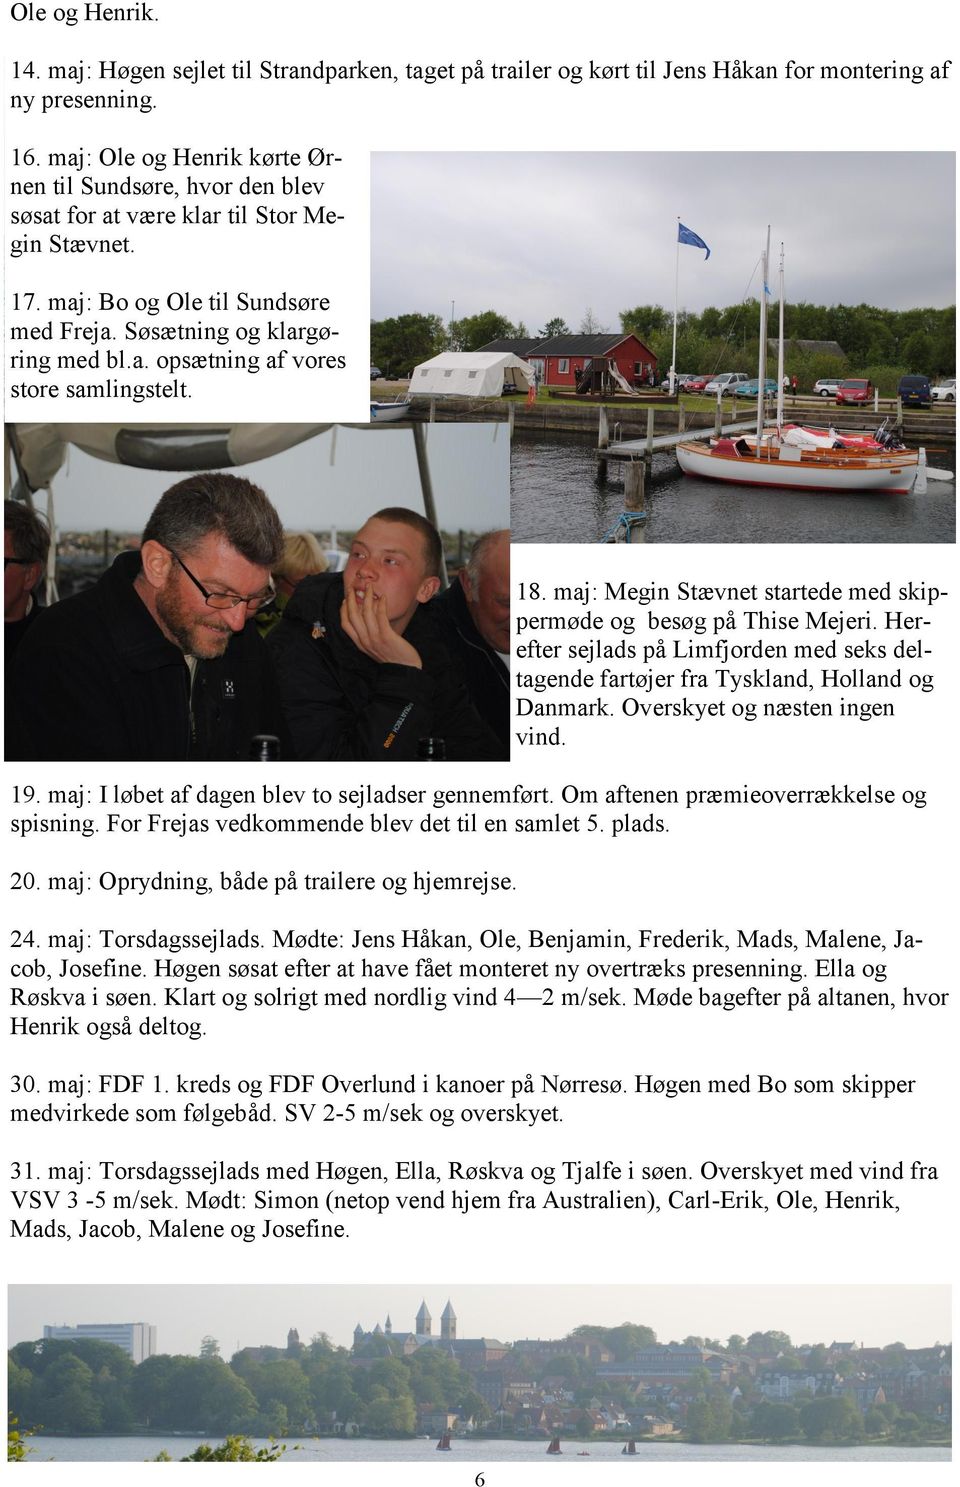 18. maj: Megin Stævnet startede med skippermøde og besøg på Thise Mejeri. Herefter sejlads på Limfjorden med seks deltagende fartøjer fra Tyskland, Holland og Danmark. Overskyet og næsten ingen vind.